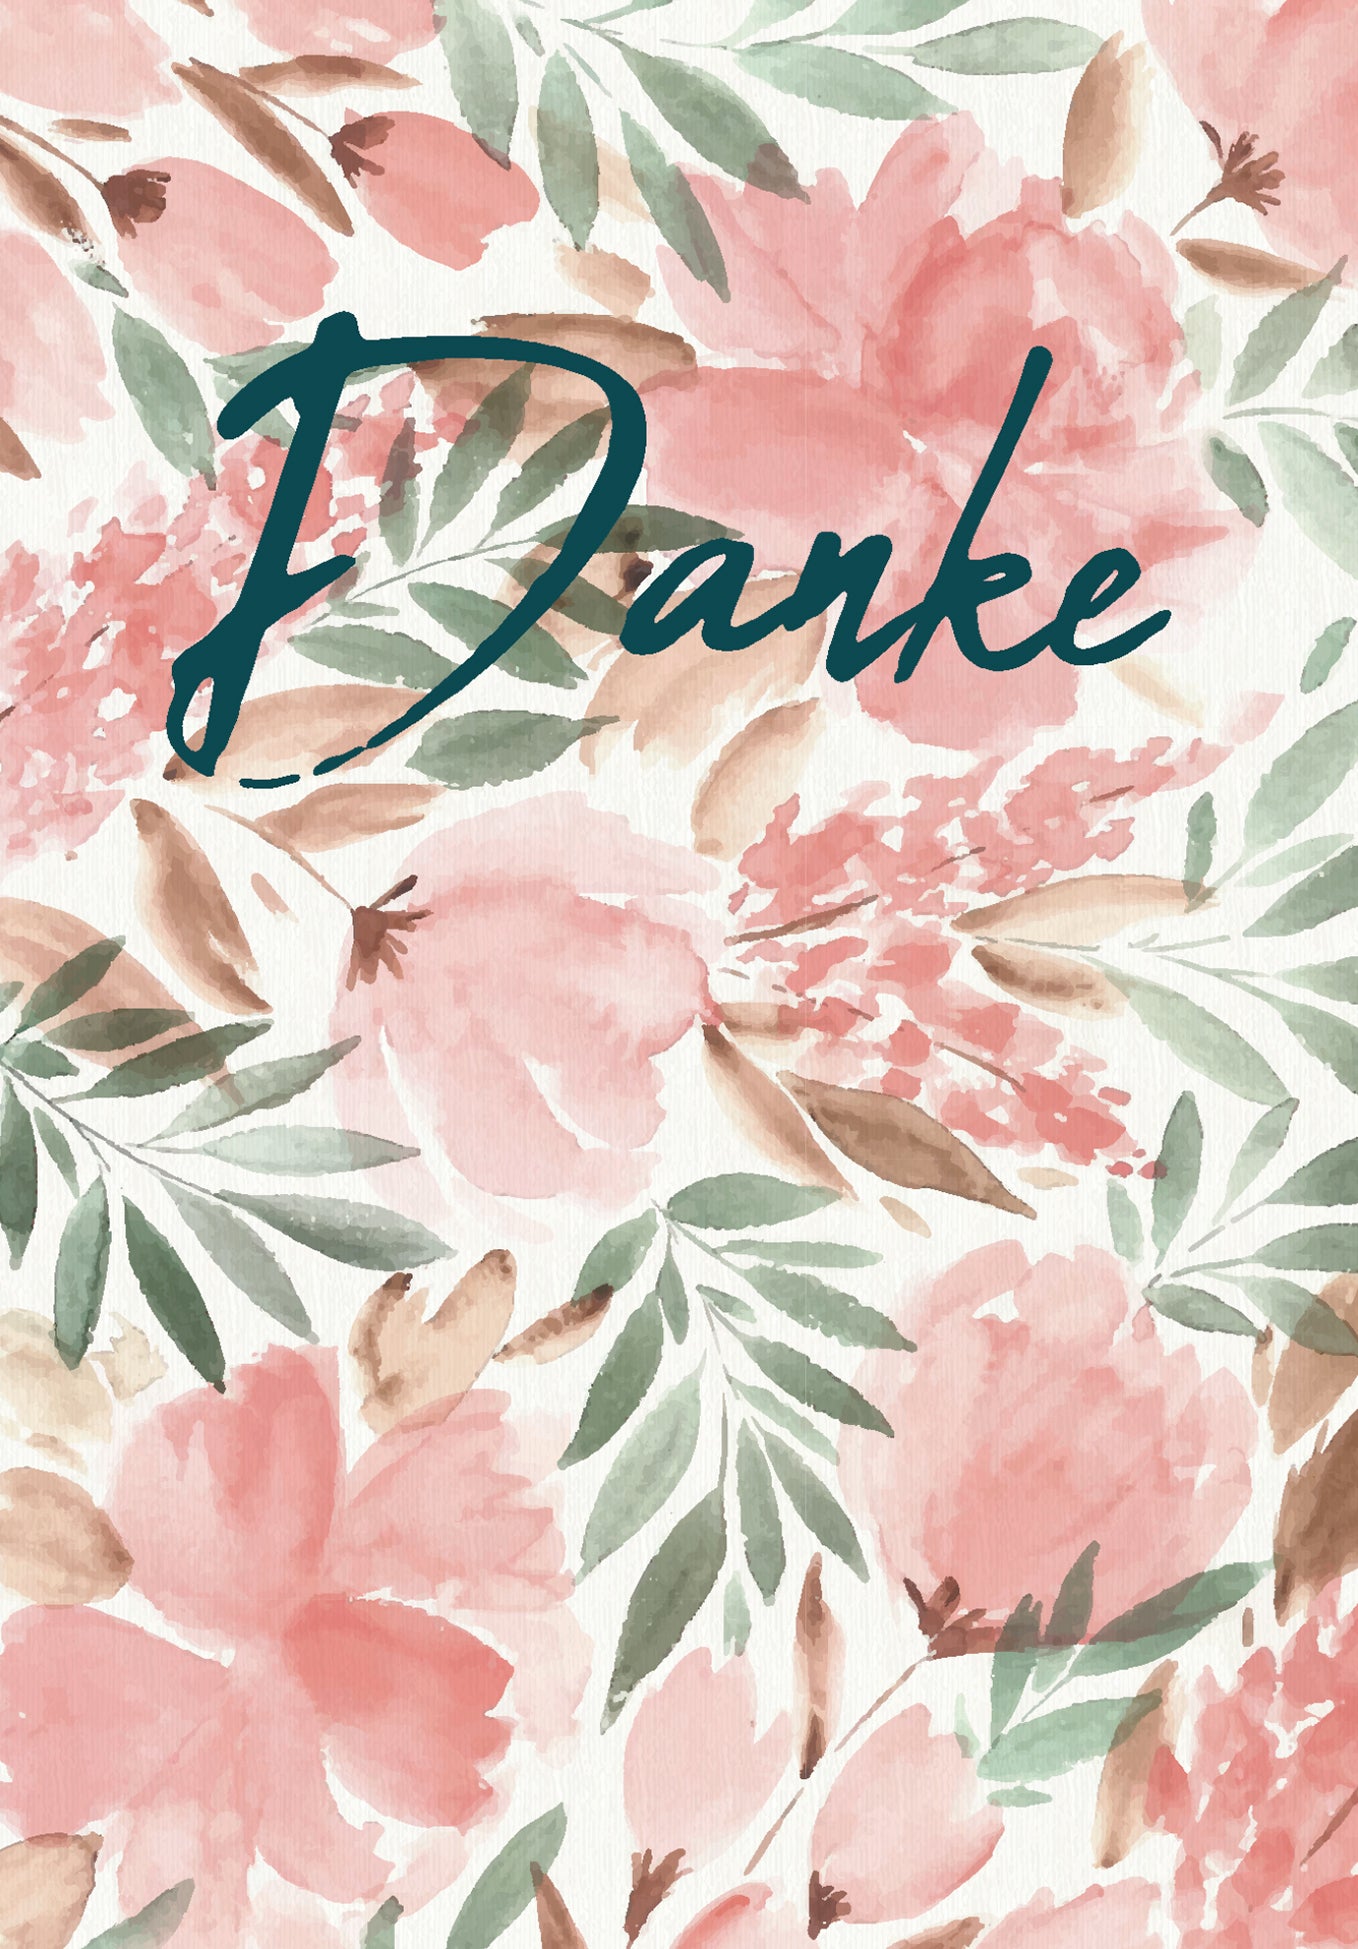 Danke - Aquarell Blume (Grado di valore)